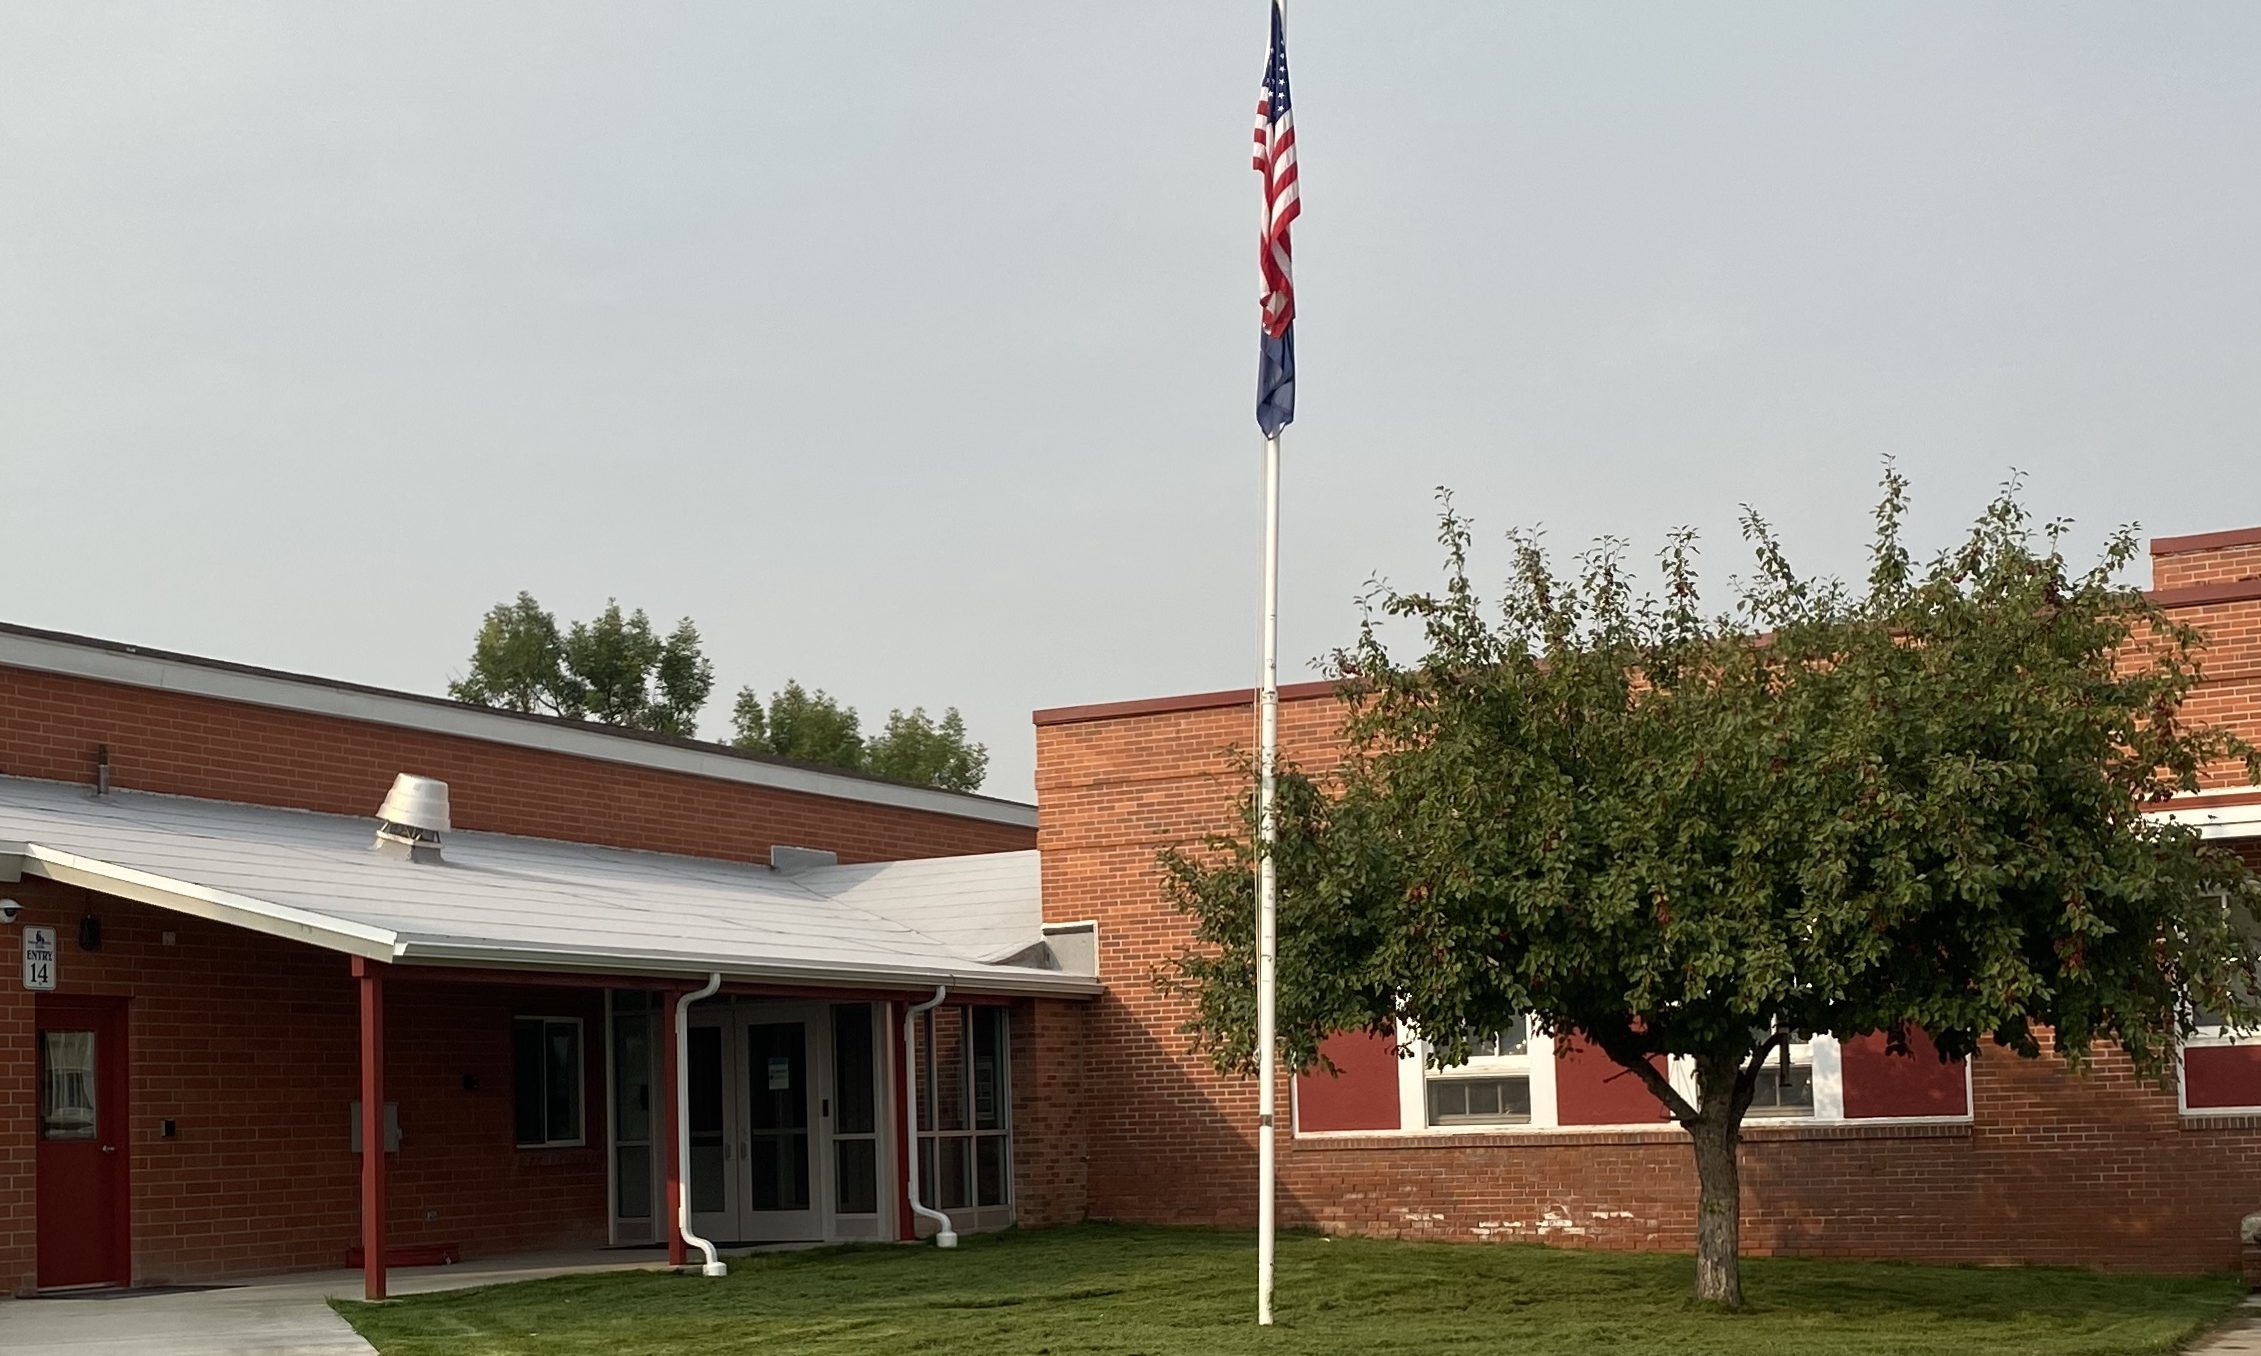 Kessler Elementary School